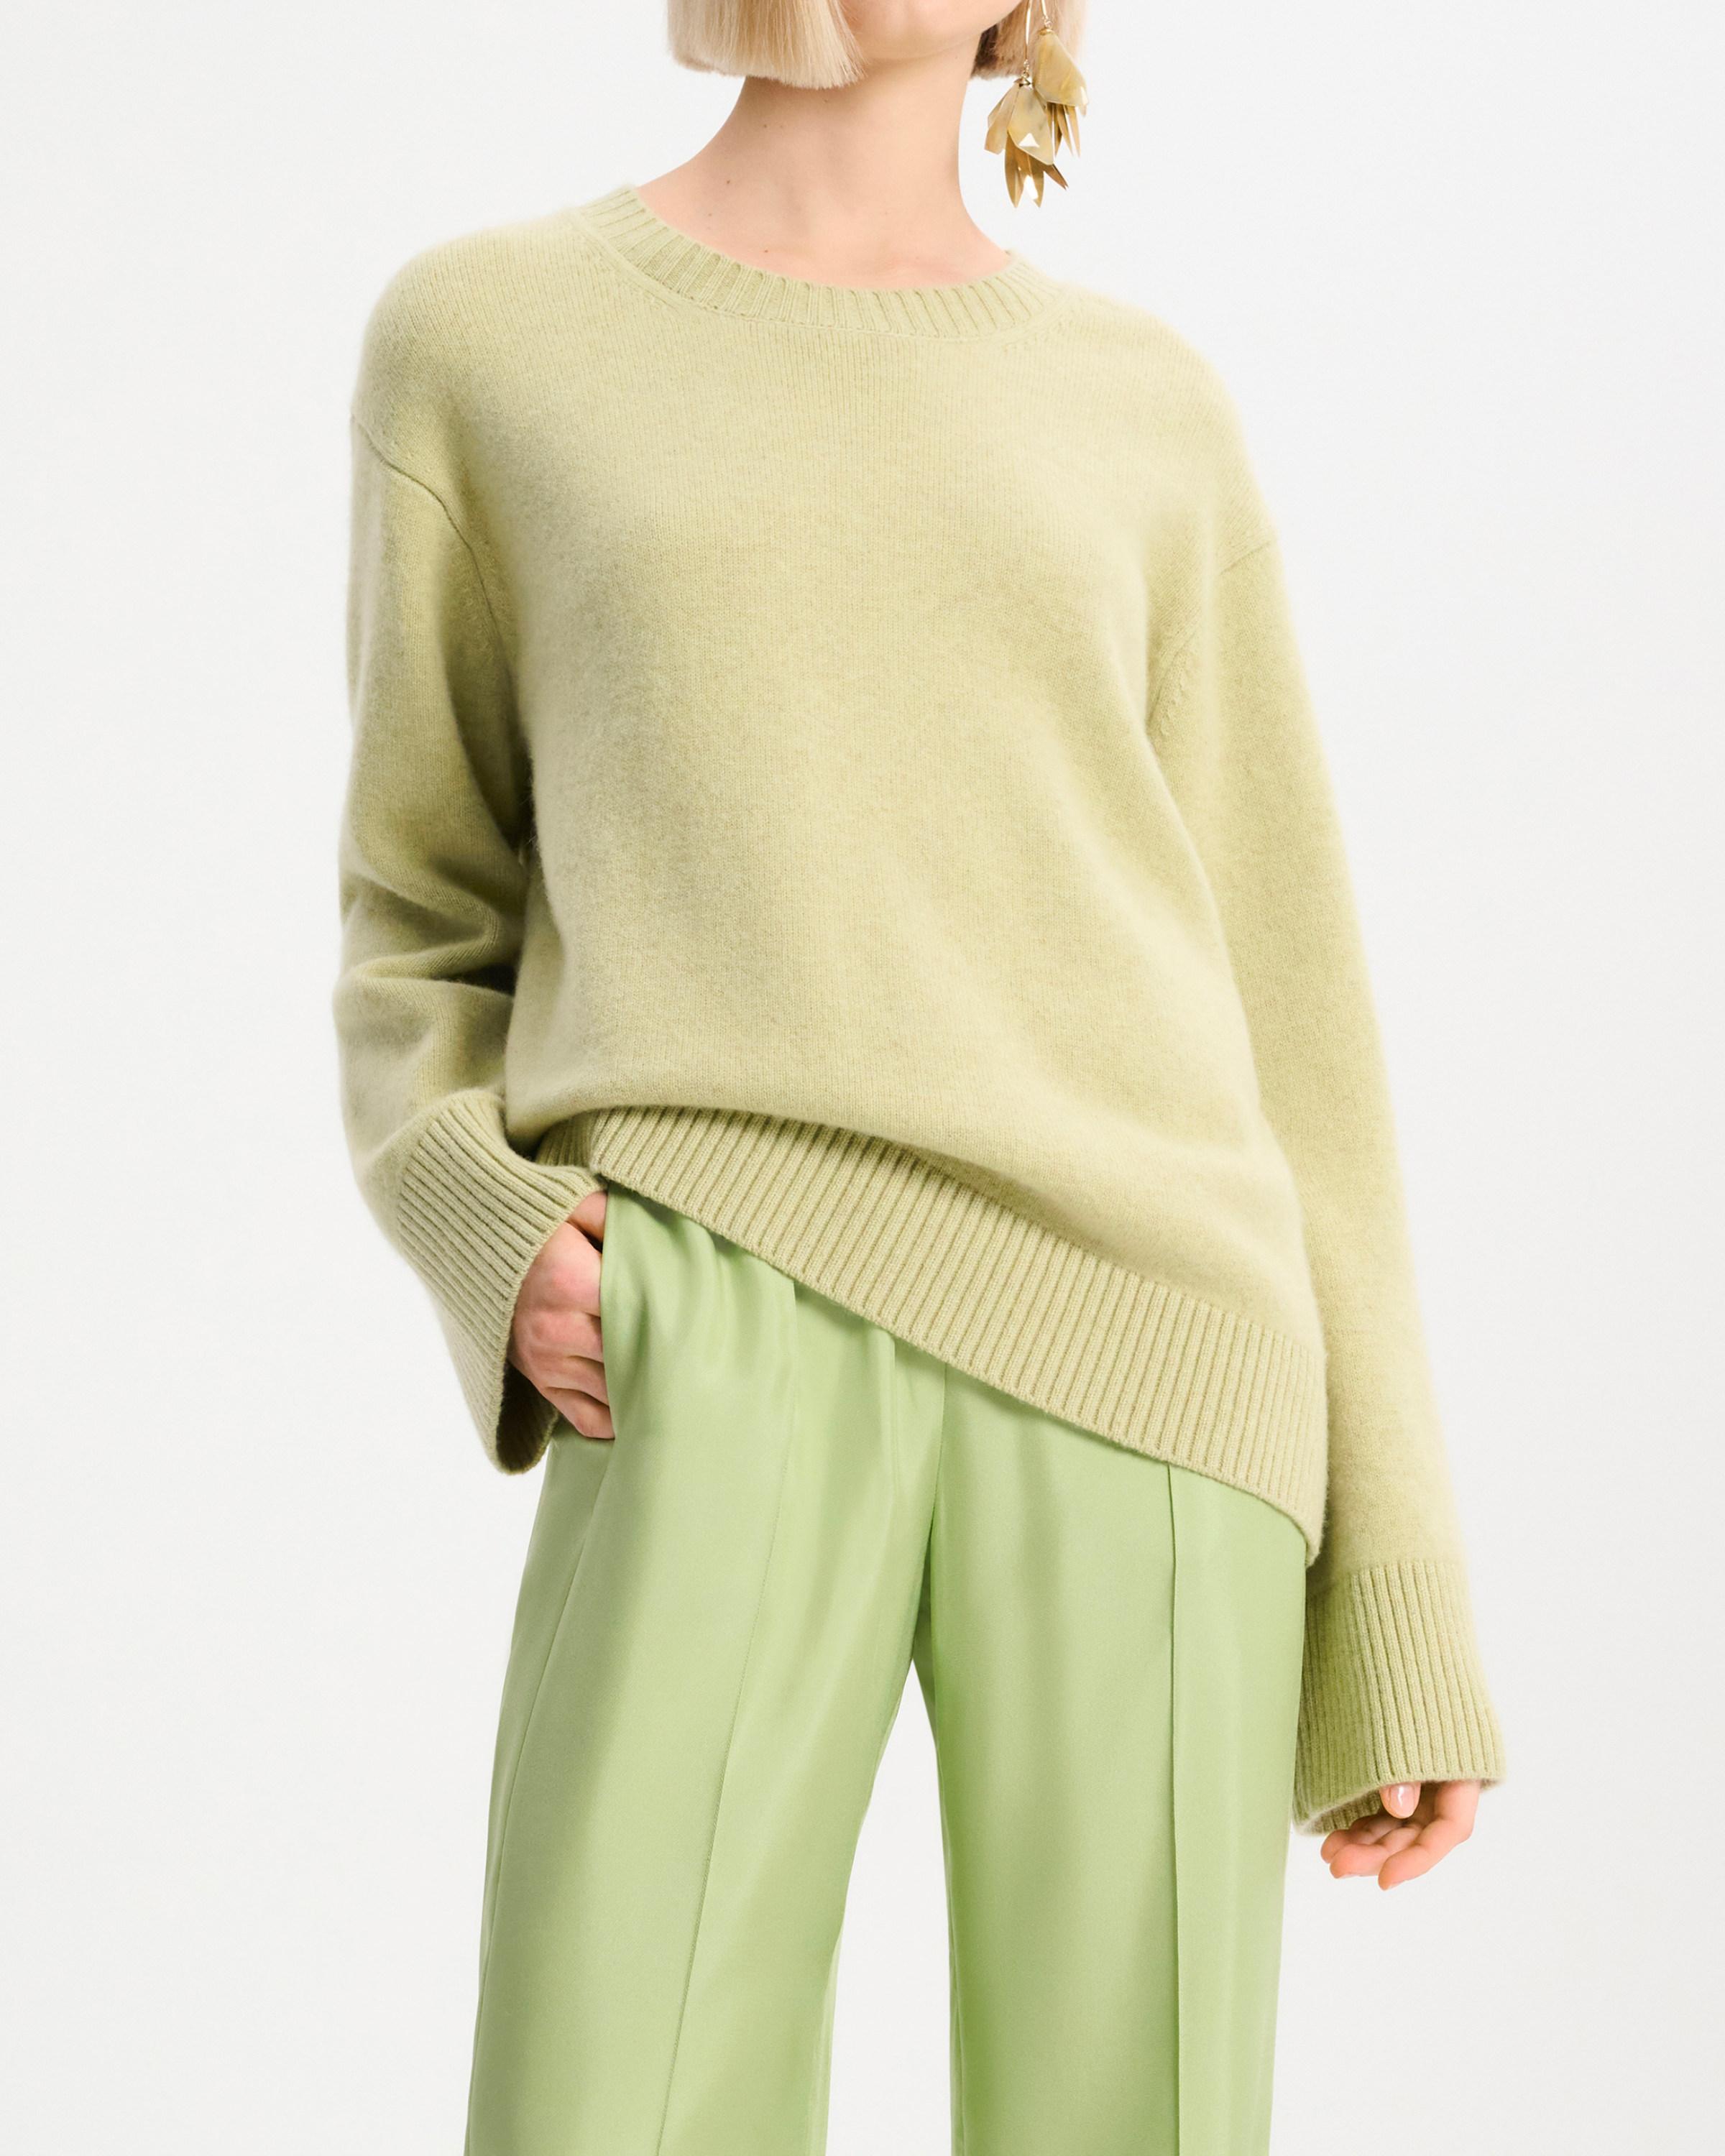 Dorothee Schumacher Luxury Comfort Pullover in Soft Lemon Green